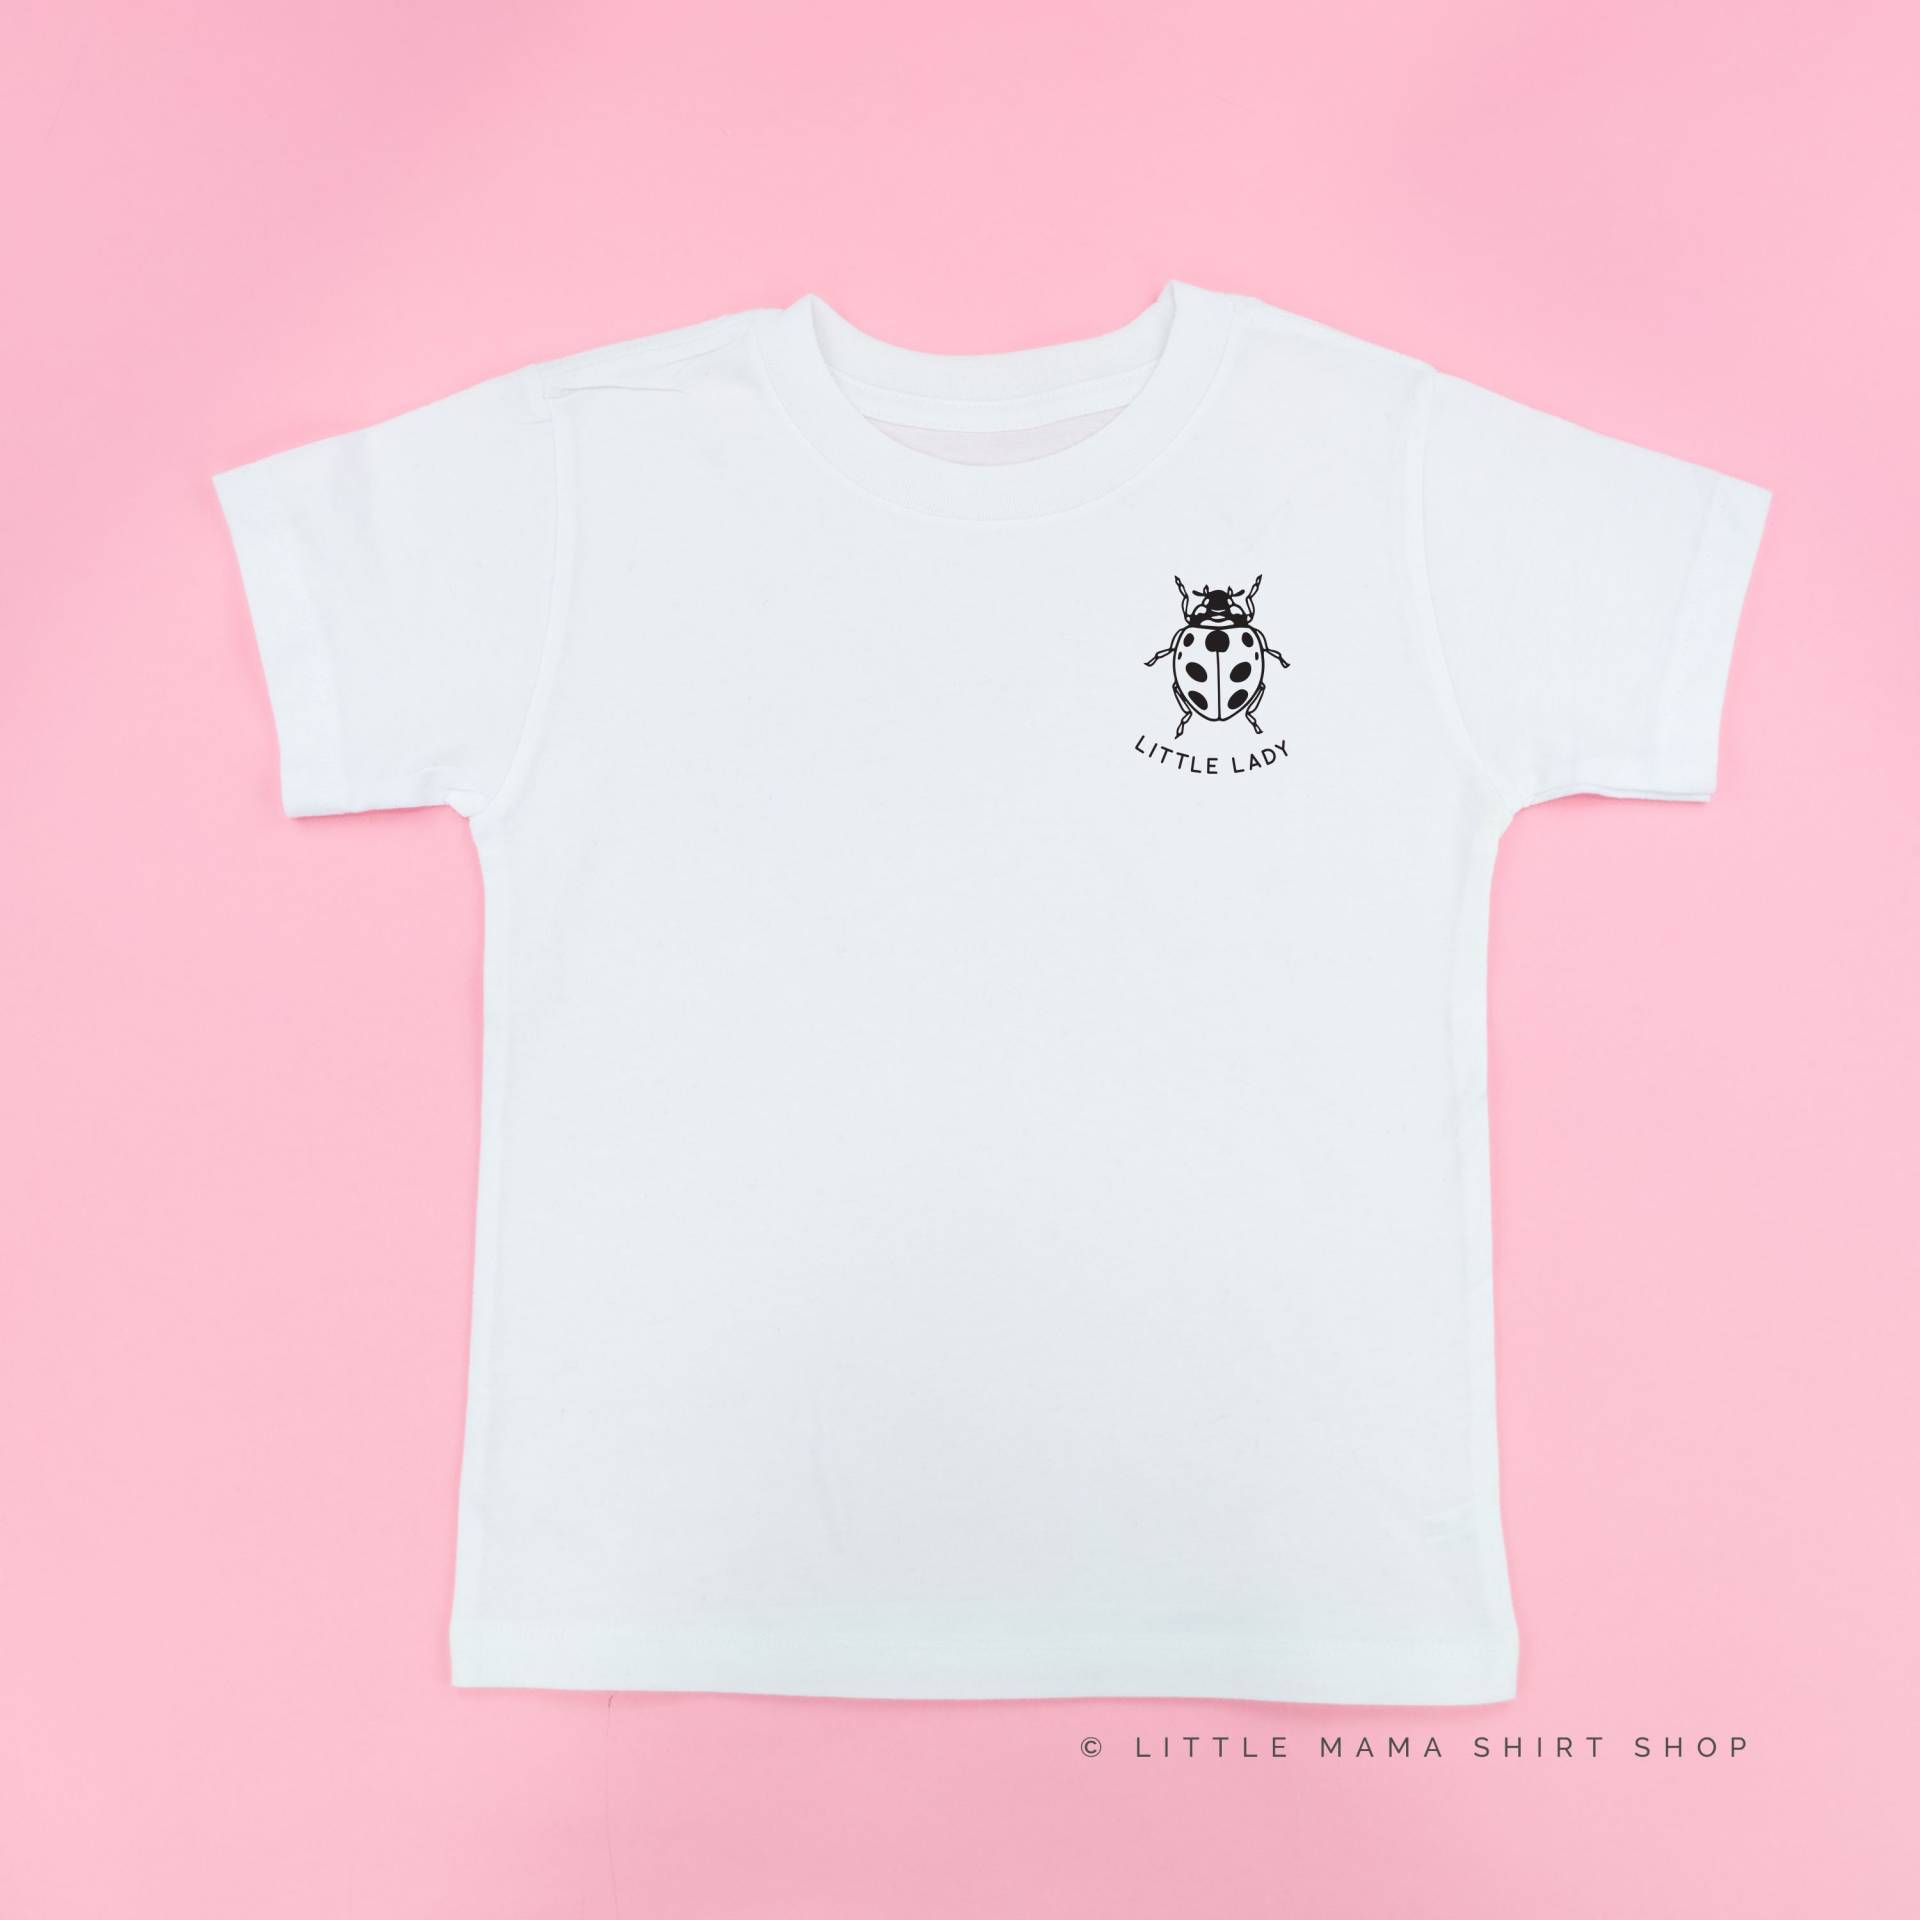 Little Lady - Lady Bug | Käfer Shirts Insektenhemden Junge Shirt Kinder Tees Grafik Natur Kleinkind Mädchen von LittleMamaShirtShop